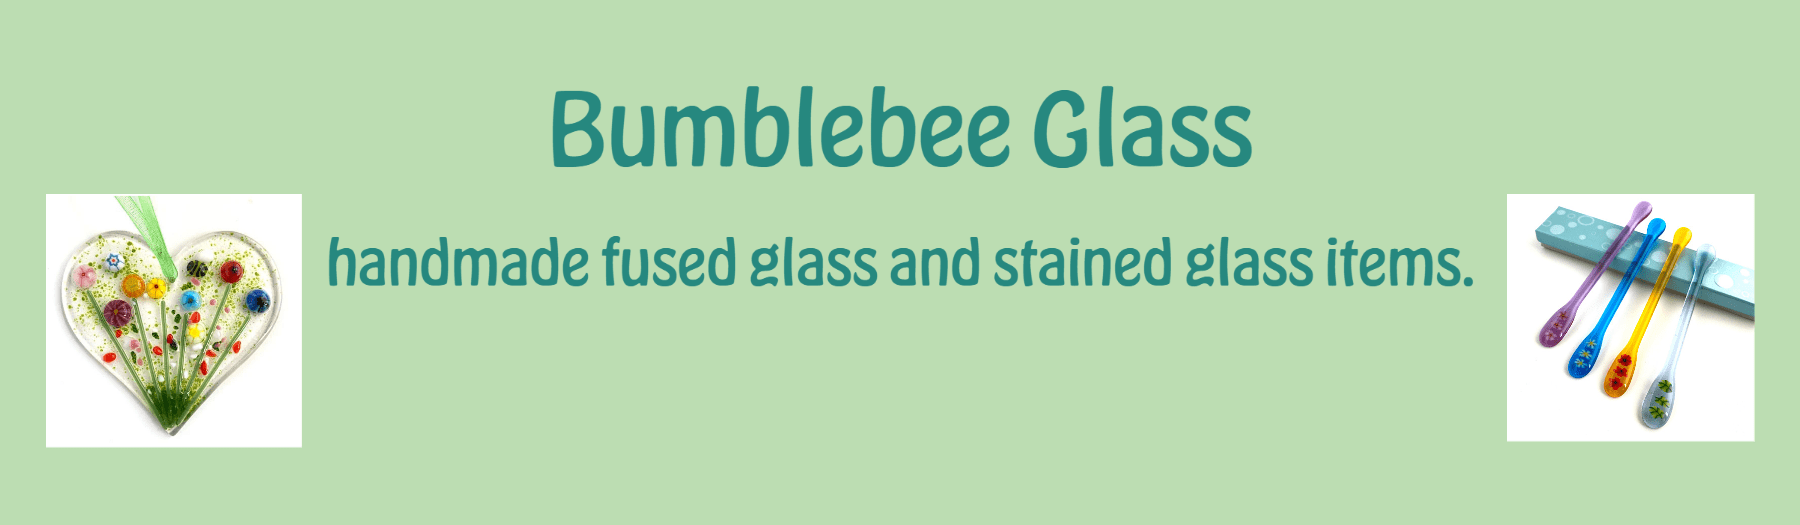 Bumblebee Glass